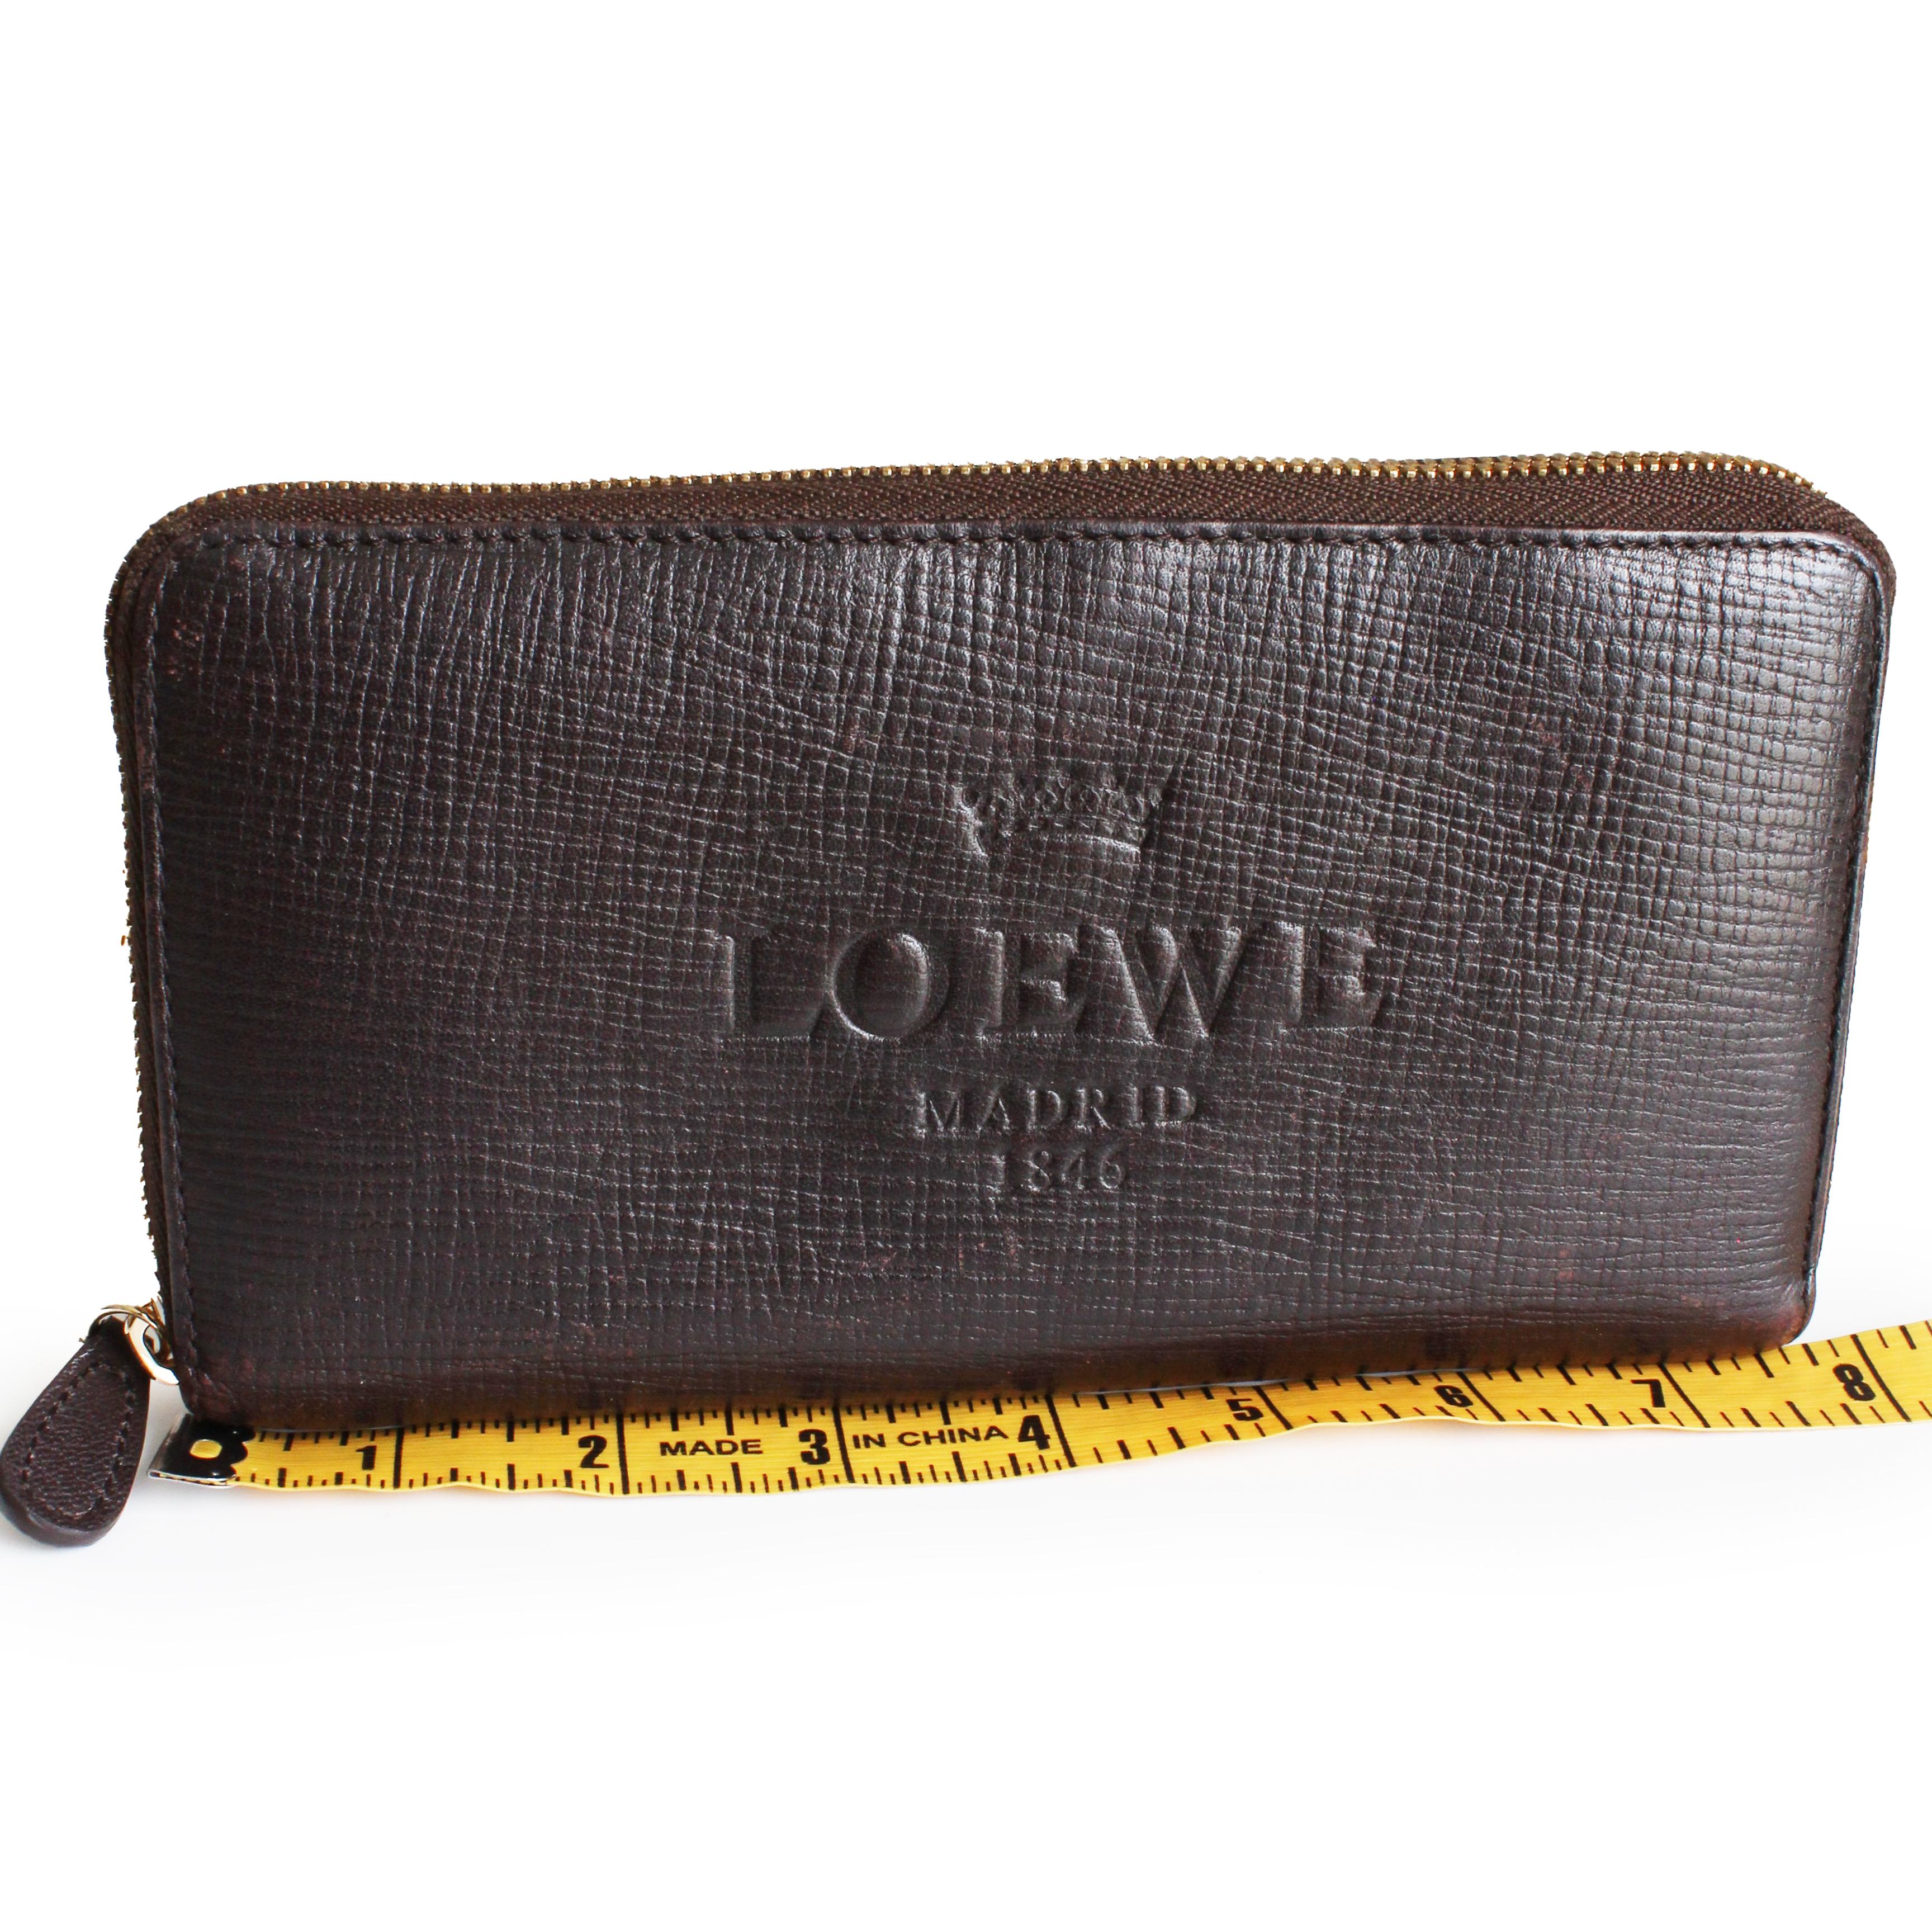 Loewe Madrid - 17 For Sale on 1stDibs | loewe madrid 1846